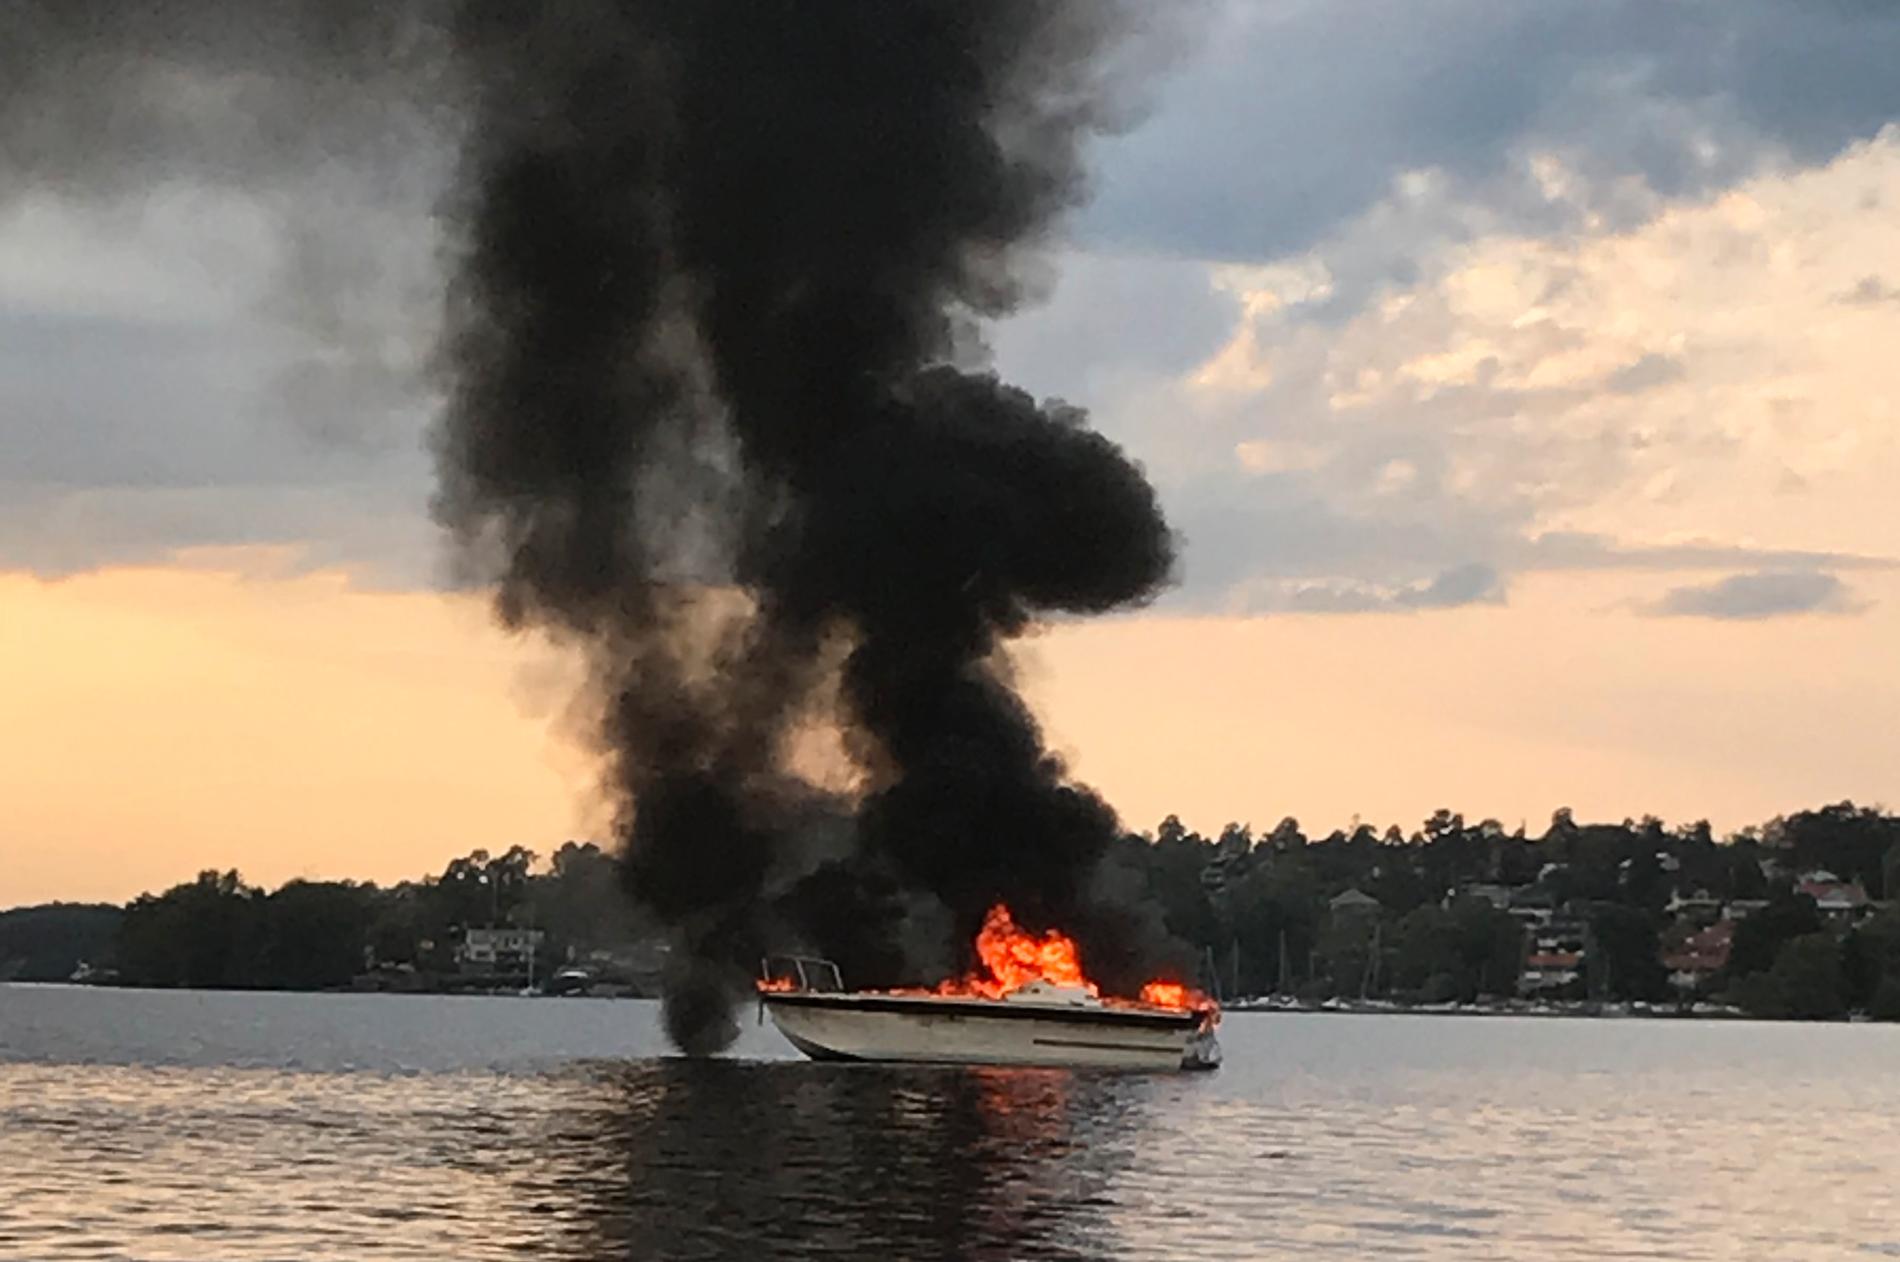 Båtbrand i Hässelby strand i fredags. 